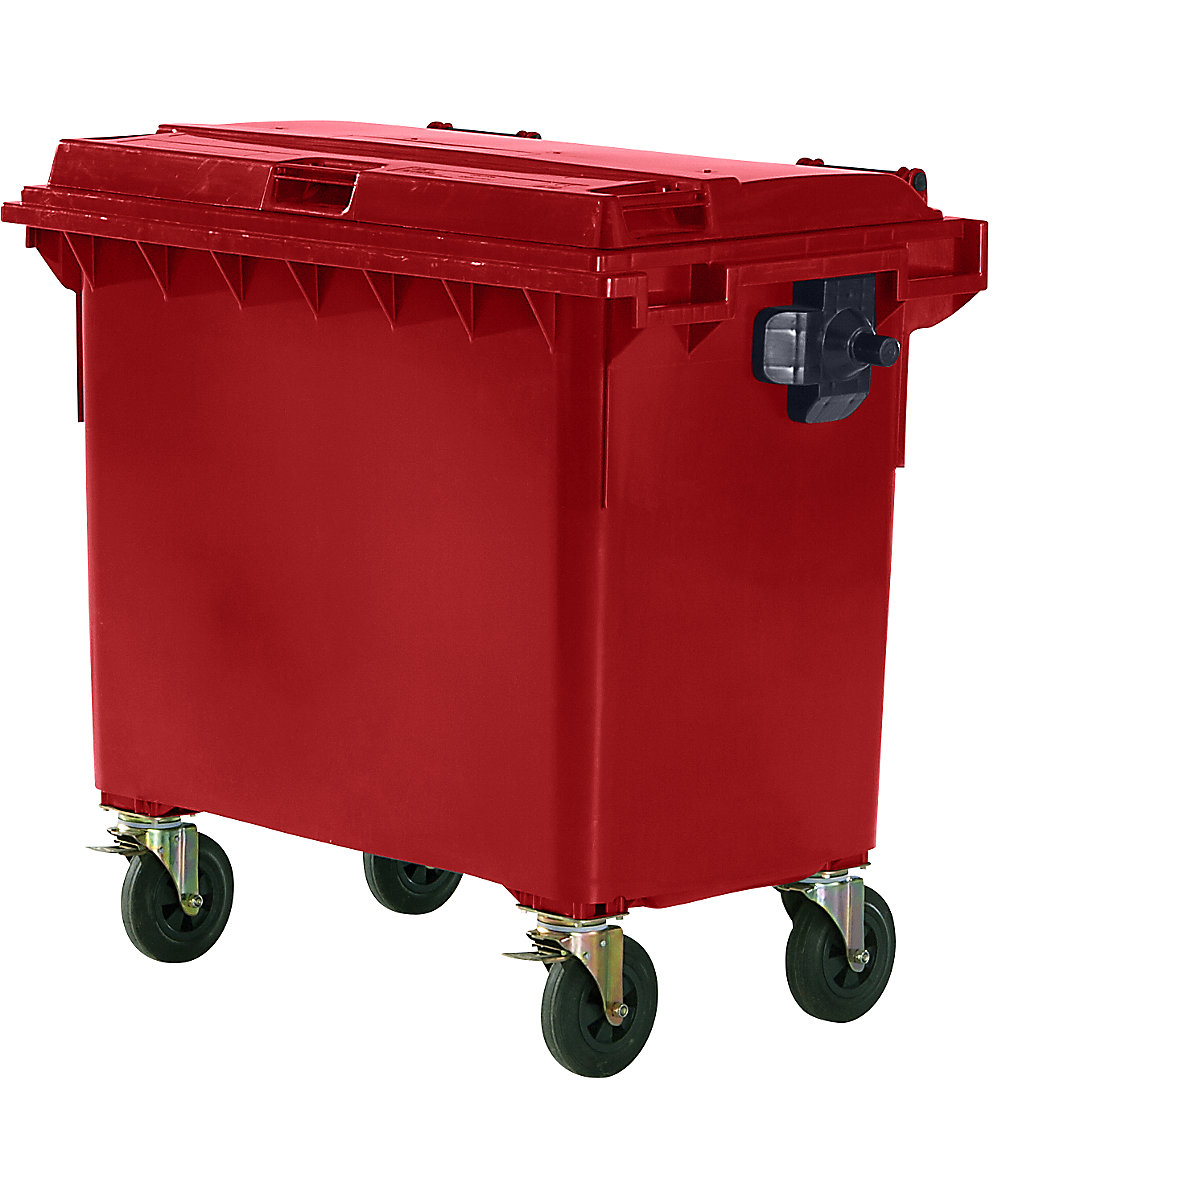 Container per rifiuti in plastica, DIN EN 840, capacità 660 l, largh. x alt. x prof. 1360 x 1235 x 765 mm, rosso, a partire da 5 pz.-5